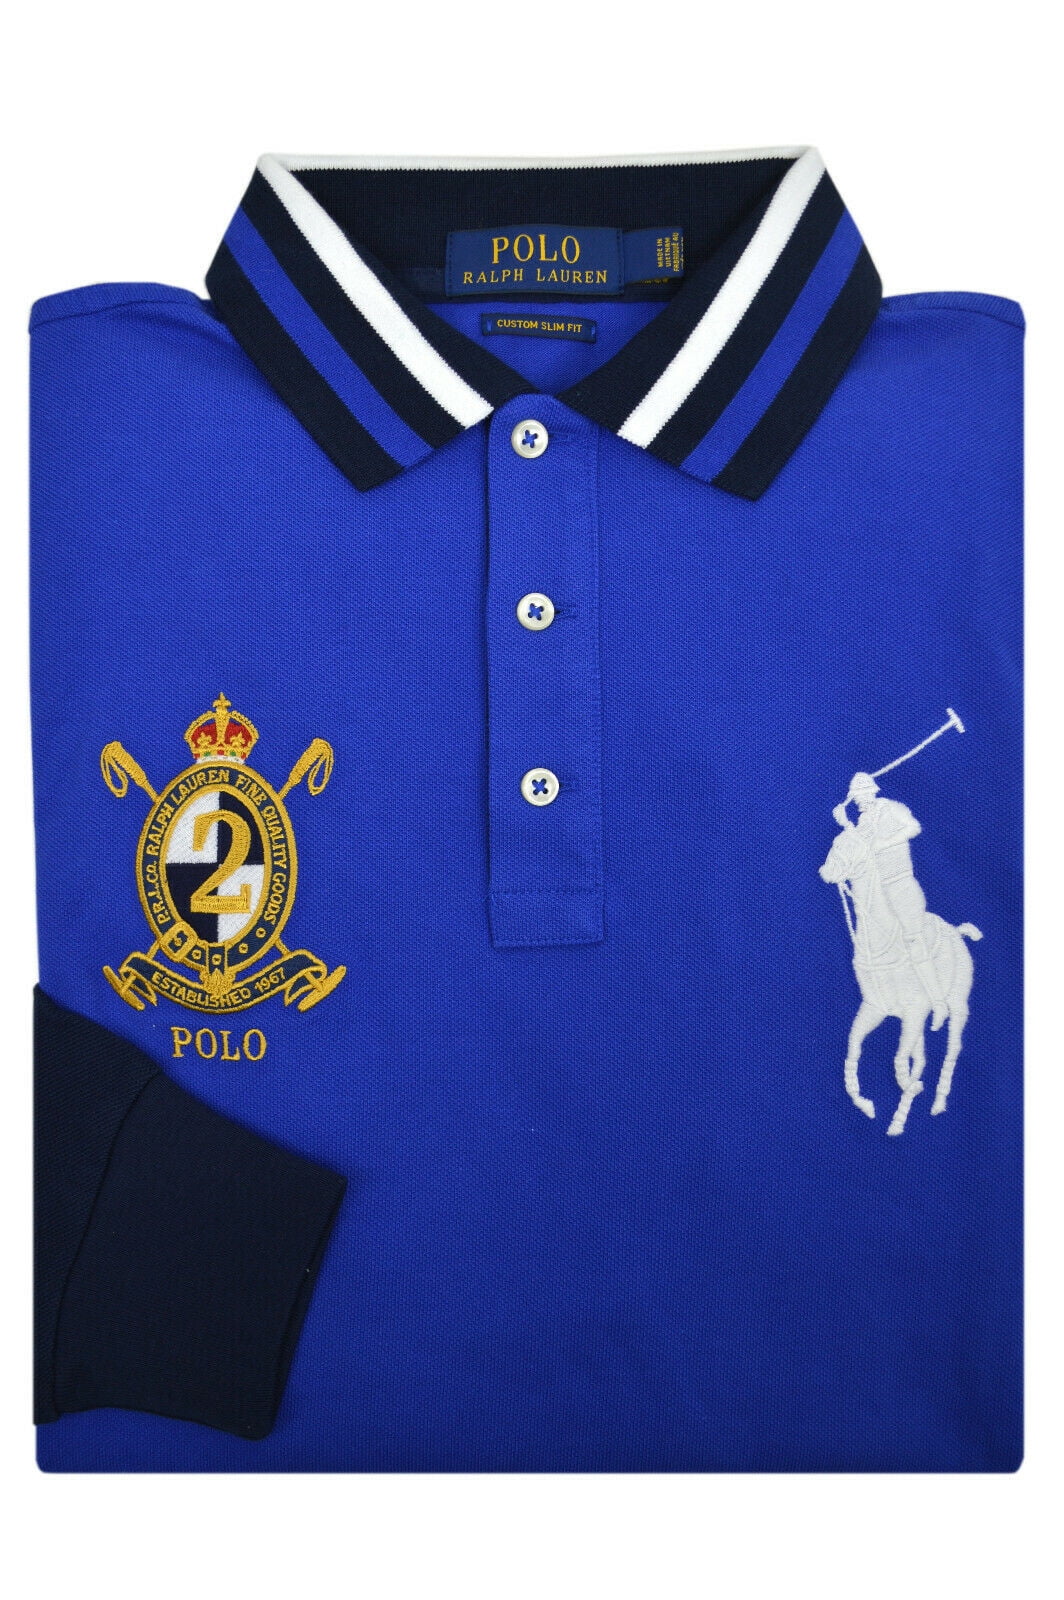 new polo ralph lauren shirts